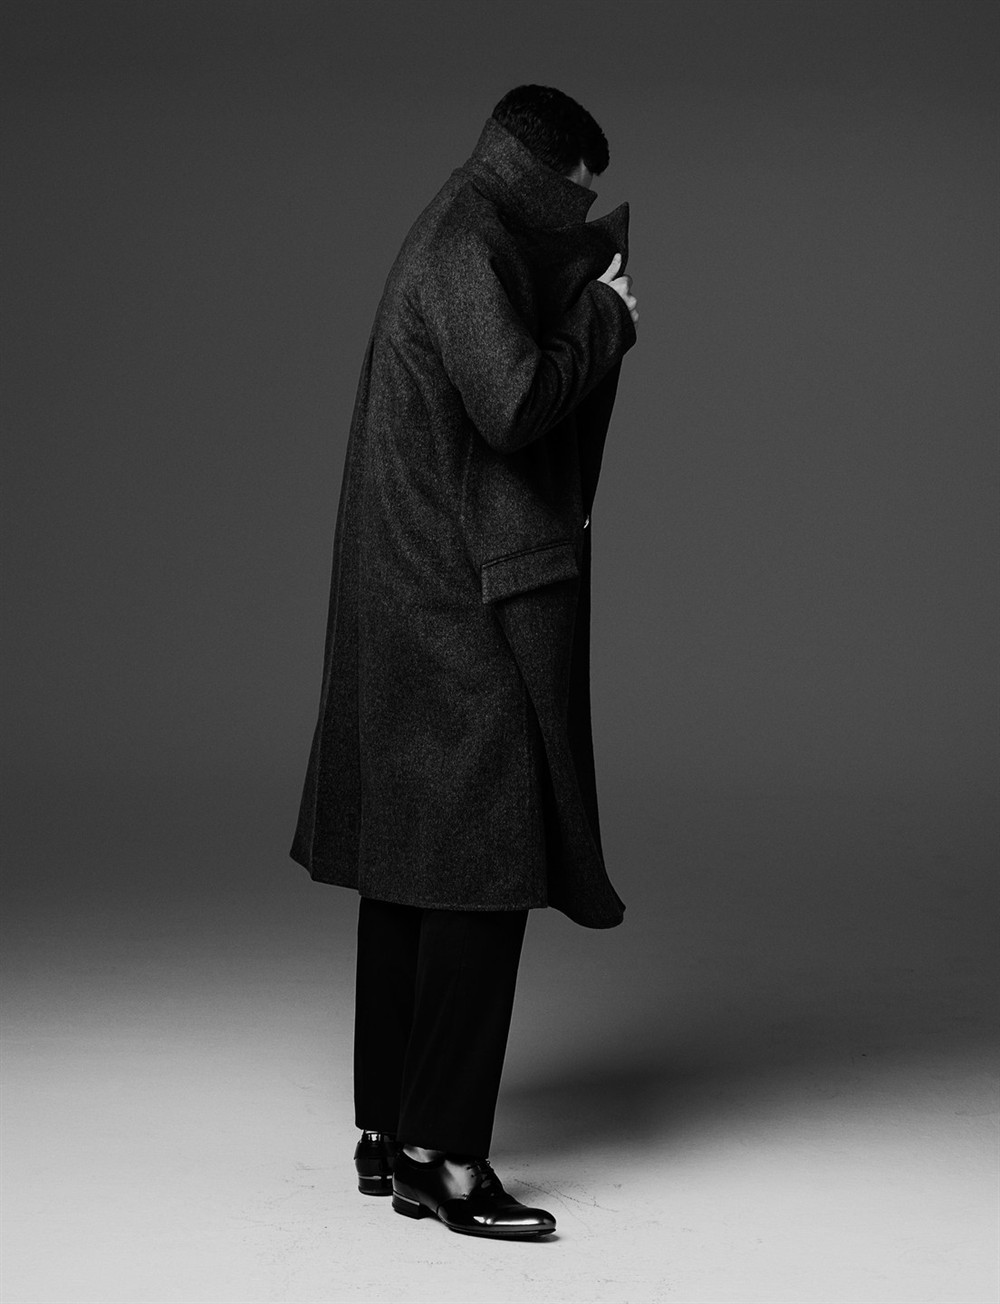 亚伦·泰勒-约翰逊黑白时尚写真图片